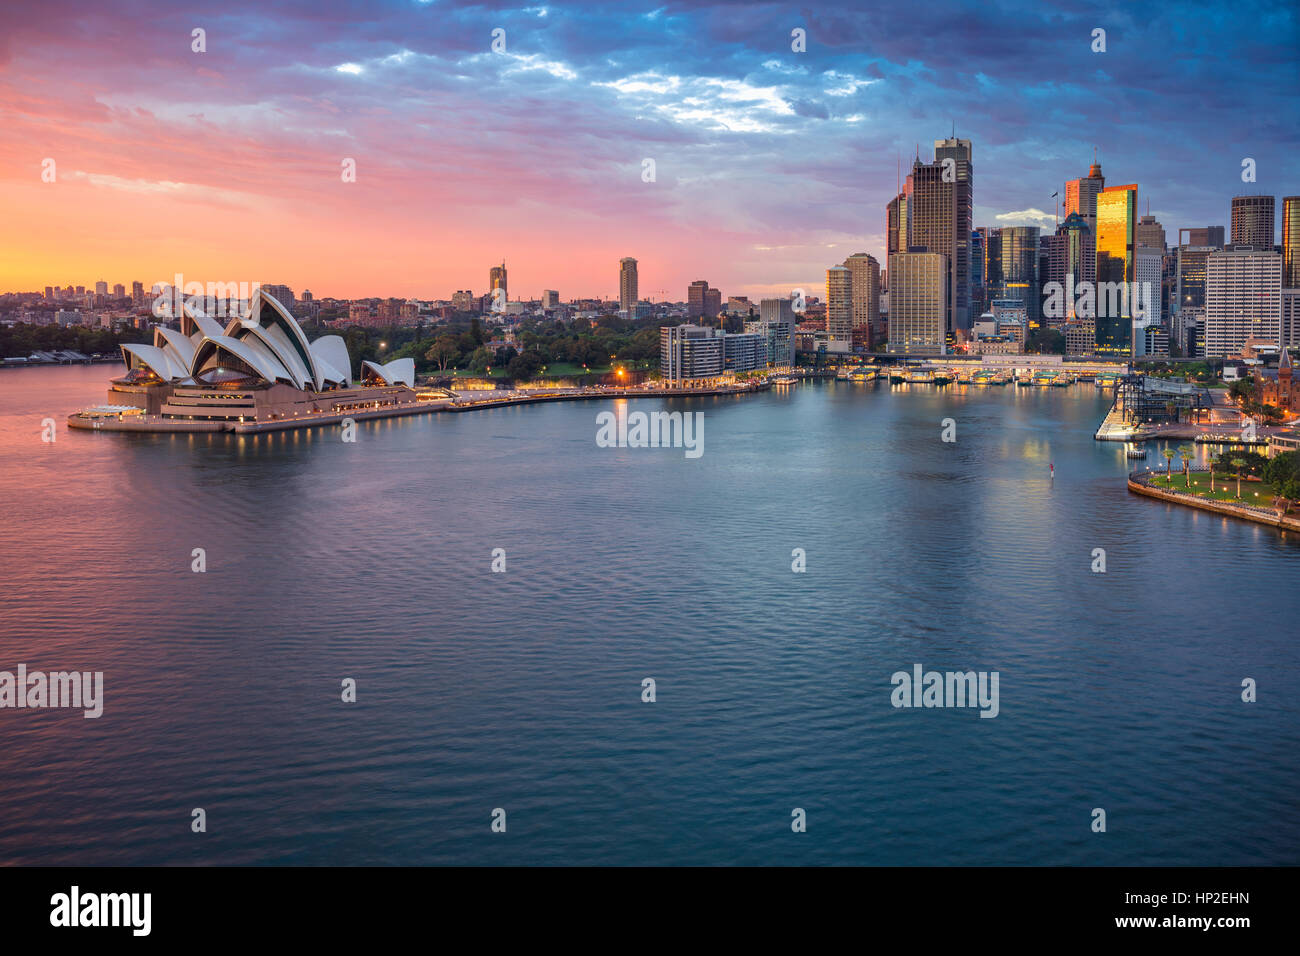 Ville de Sydney. Cityscape image de Sydney, Australie pendant le lever du soleil. Banque D'Images